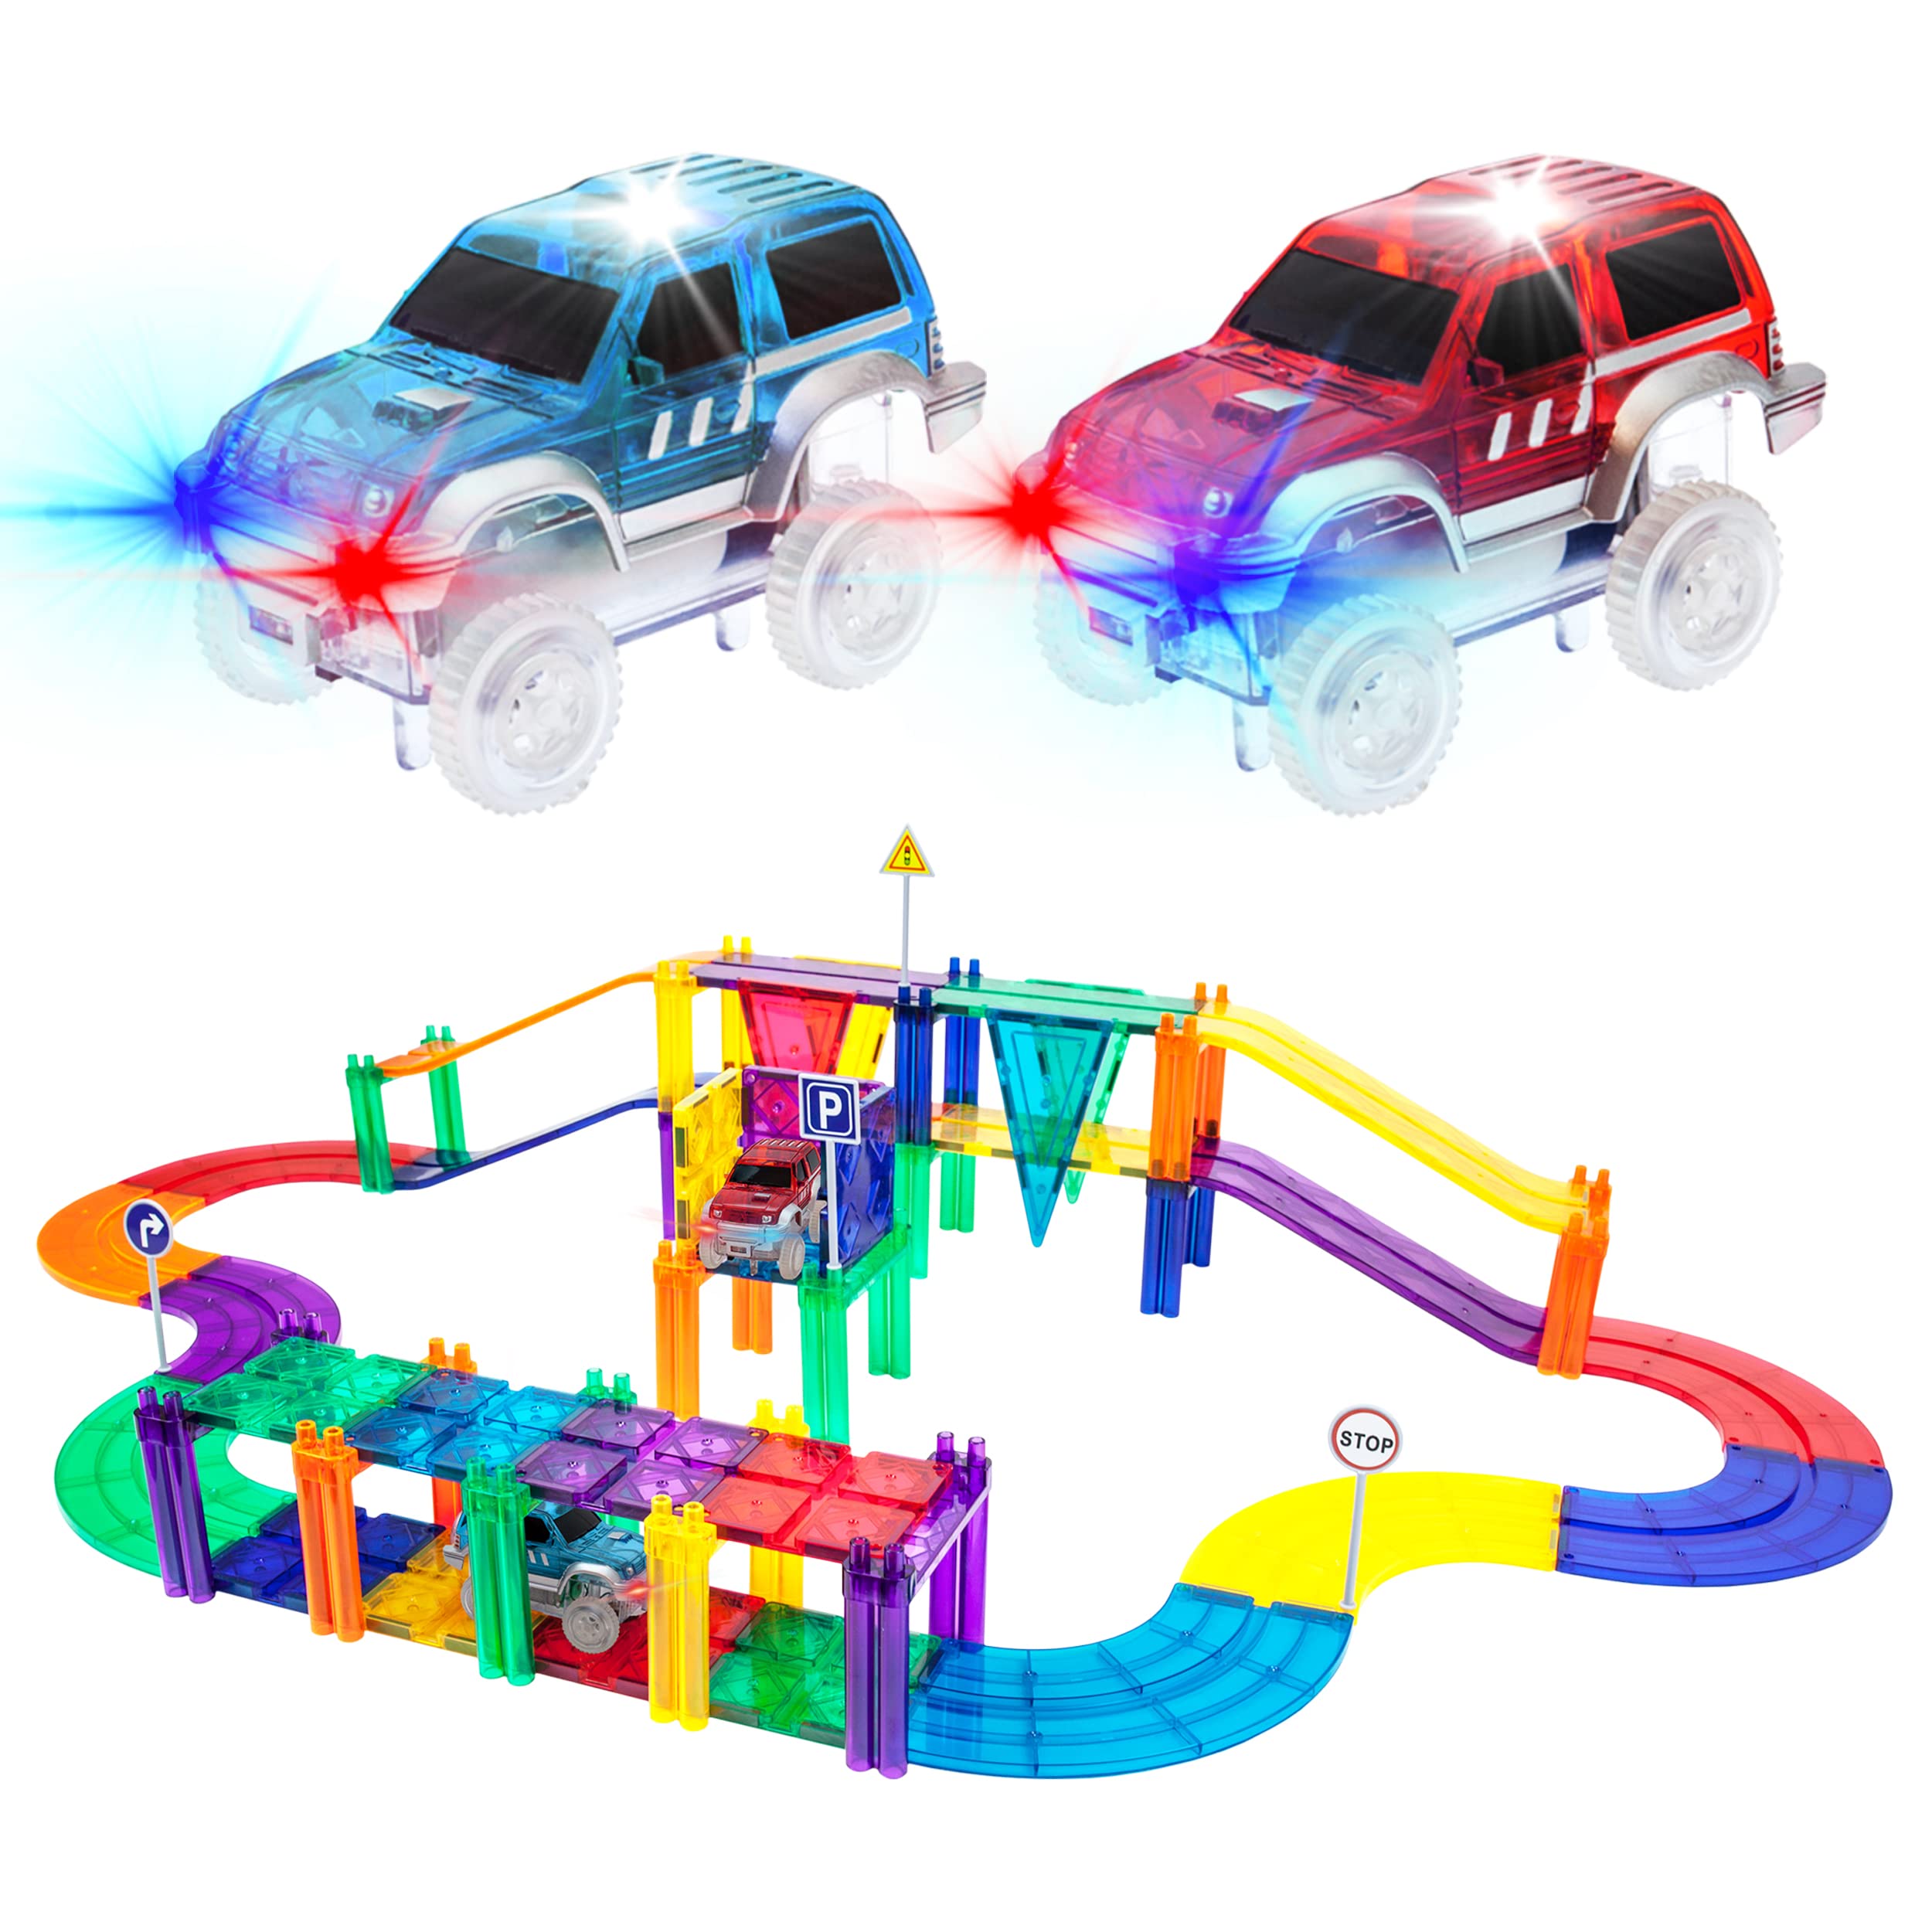 PicassoTiles 50 件赛车轨道积木教育玩具套装磁性瓷砖磁铁 DIY 玩具套装 2 件发光 STEM...